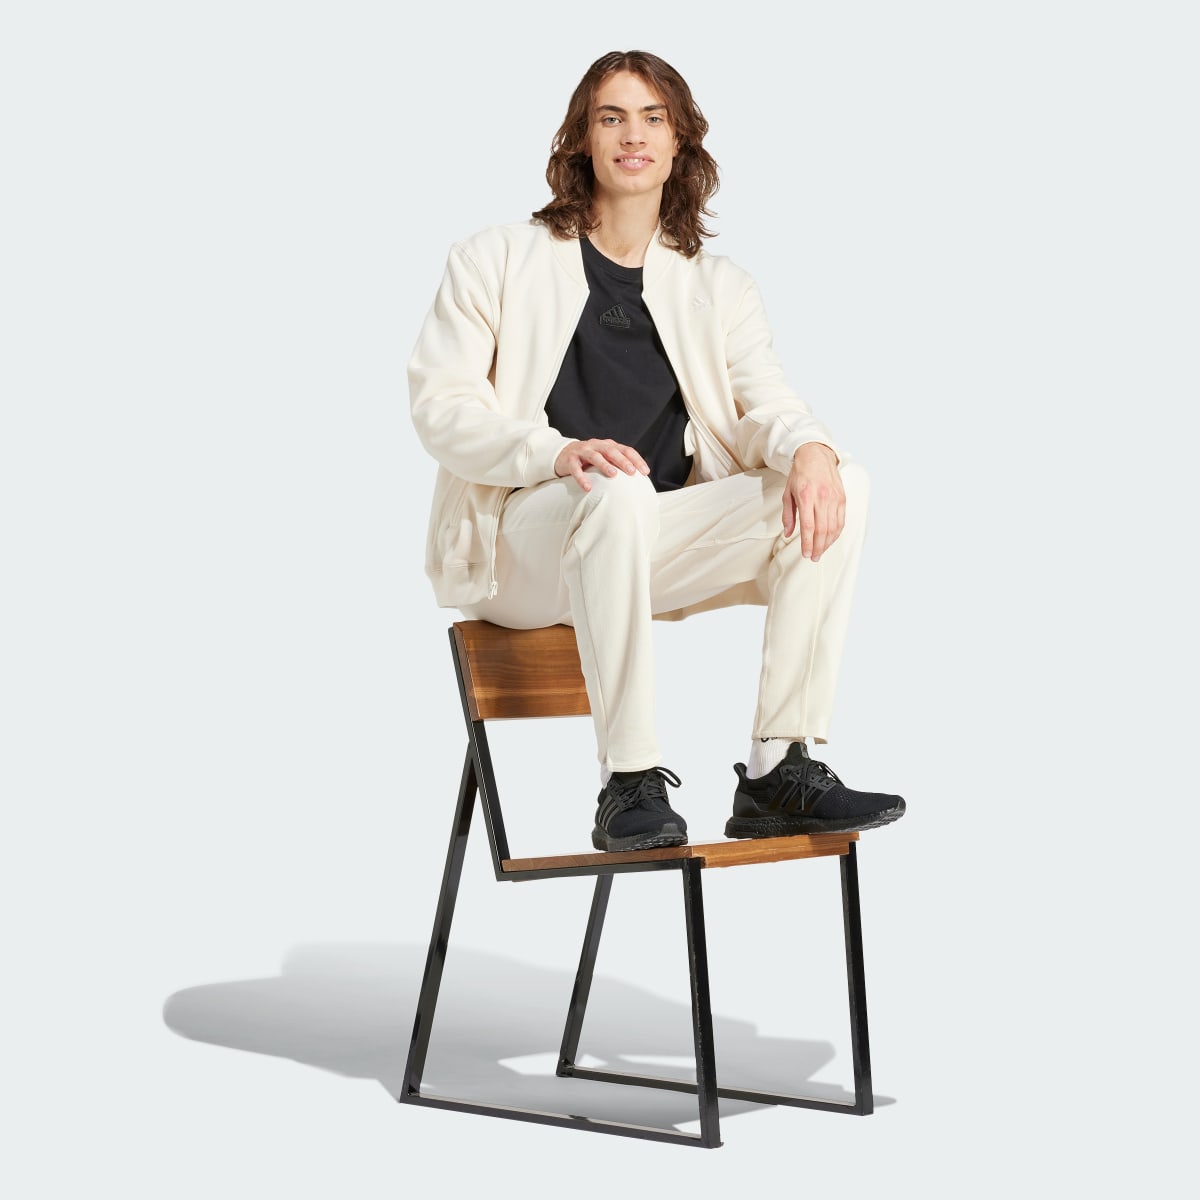 Adidas Lounge Fleece Bomber Jacket With Zip Opening. 4